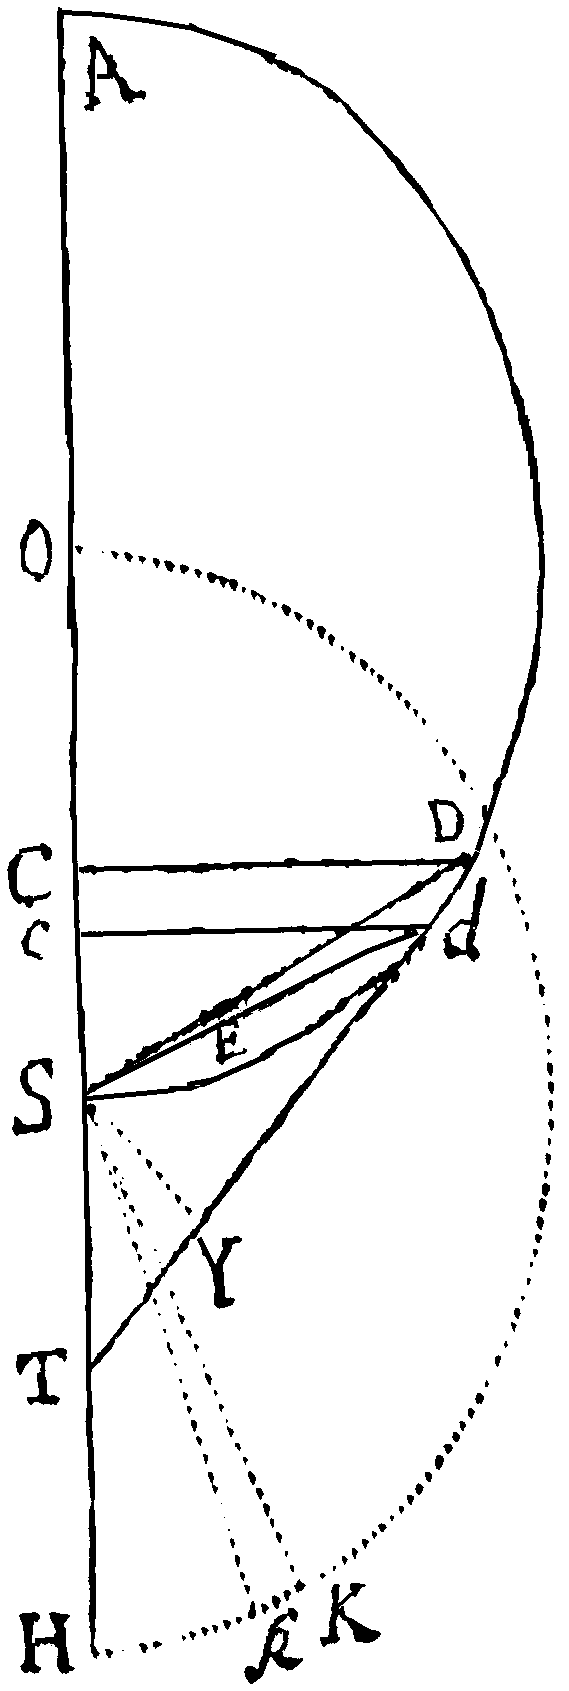 Figure for Prop. XXXV.